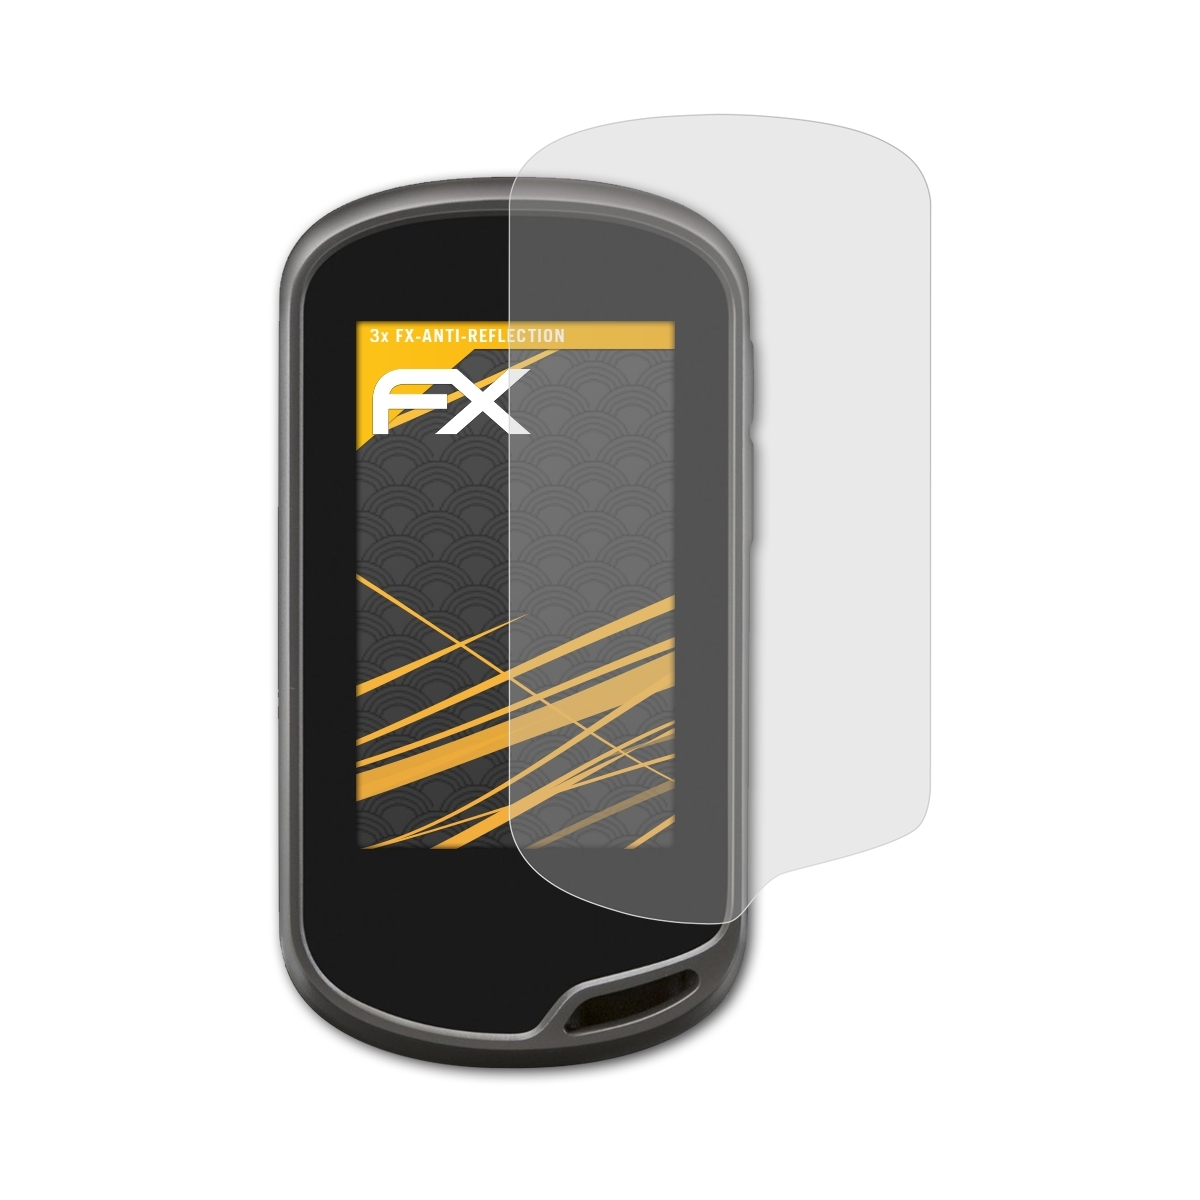 Displayschutz(für 3x Garmin Oregon ATFOLIX 650t) FX-Antireflex